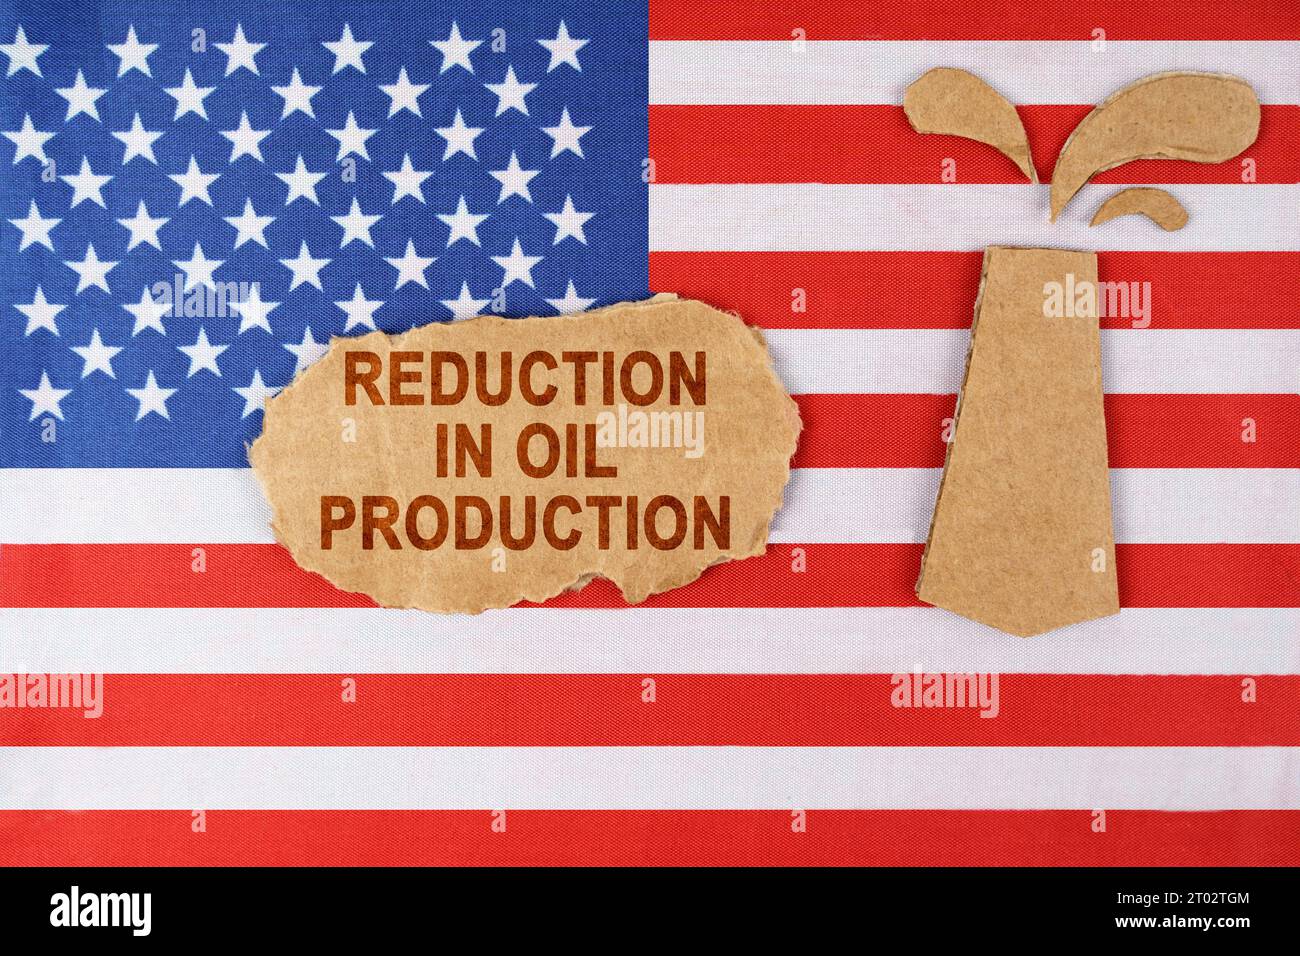 Sulla bandiera degli Stati Uniti c'è una piattaforma petrolifera tagliata in cartone e un cartello con l'iscrizione - riduzione della produzione di petrolio. Foto Stock